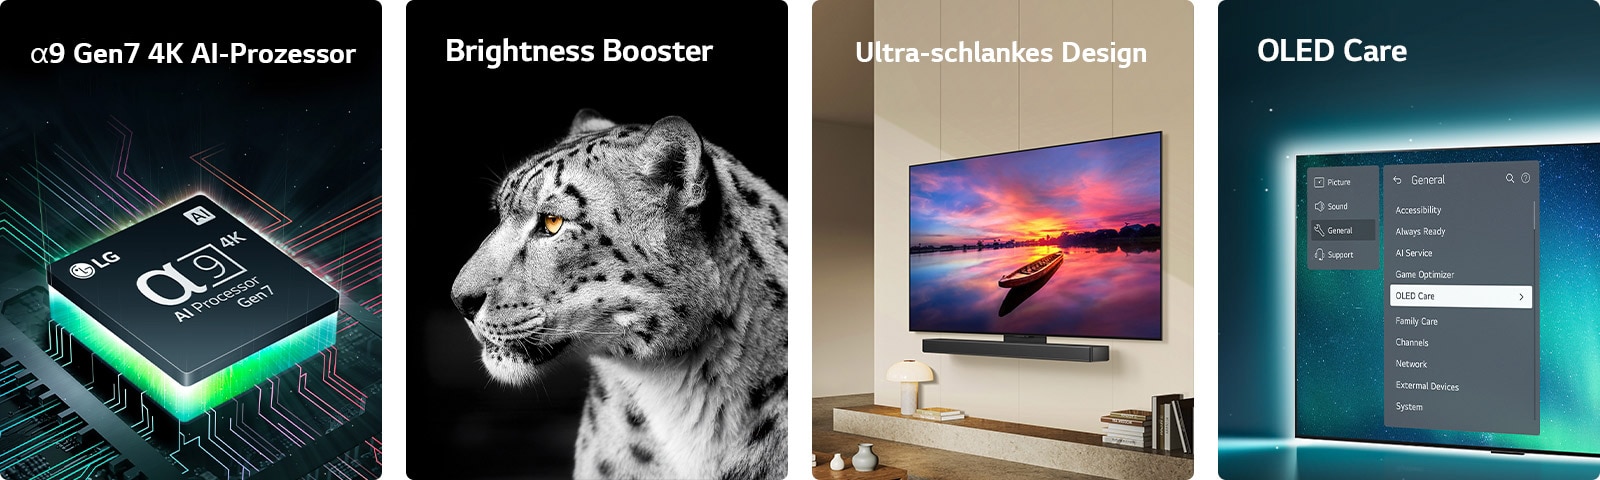 Wir sehen den alpha 9 Gen7 4K AI-Prozessor von LG auf einem Motherboard, der grüne Lichtblitze ausstrahlt. Brightness Booster mit seitlichem Gesichtsbild eines weissen Leoparden. Ultra-schlank und LG Soundbar-fähig; fach an der Wand eines modernen Wohnraums angebracht. OLED TV mit dem OLED Care-Menü ist im Support-Menü oben auf dem Bildschirm ausgewählt.